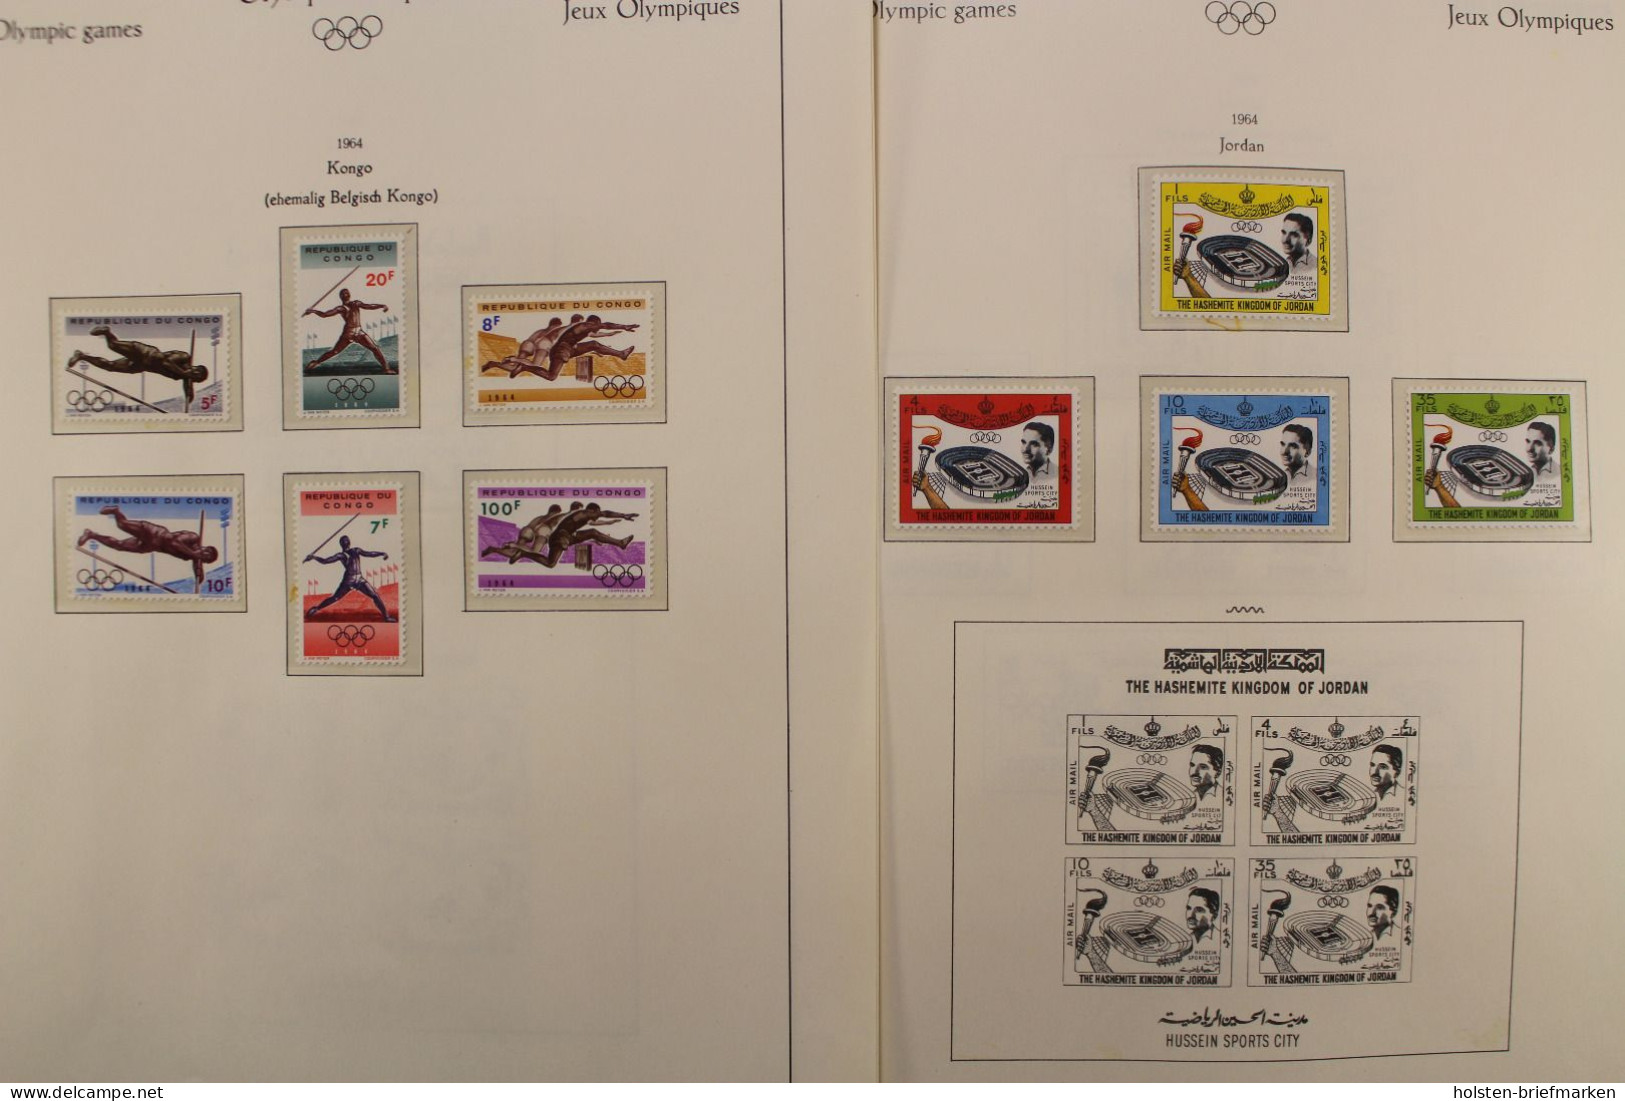 Olympiade 1964, postfrische Teilsammlung im Vordruckalbum